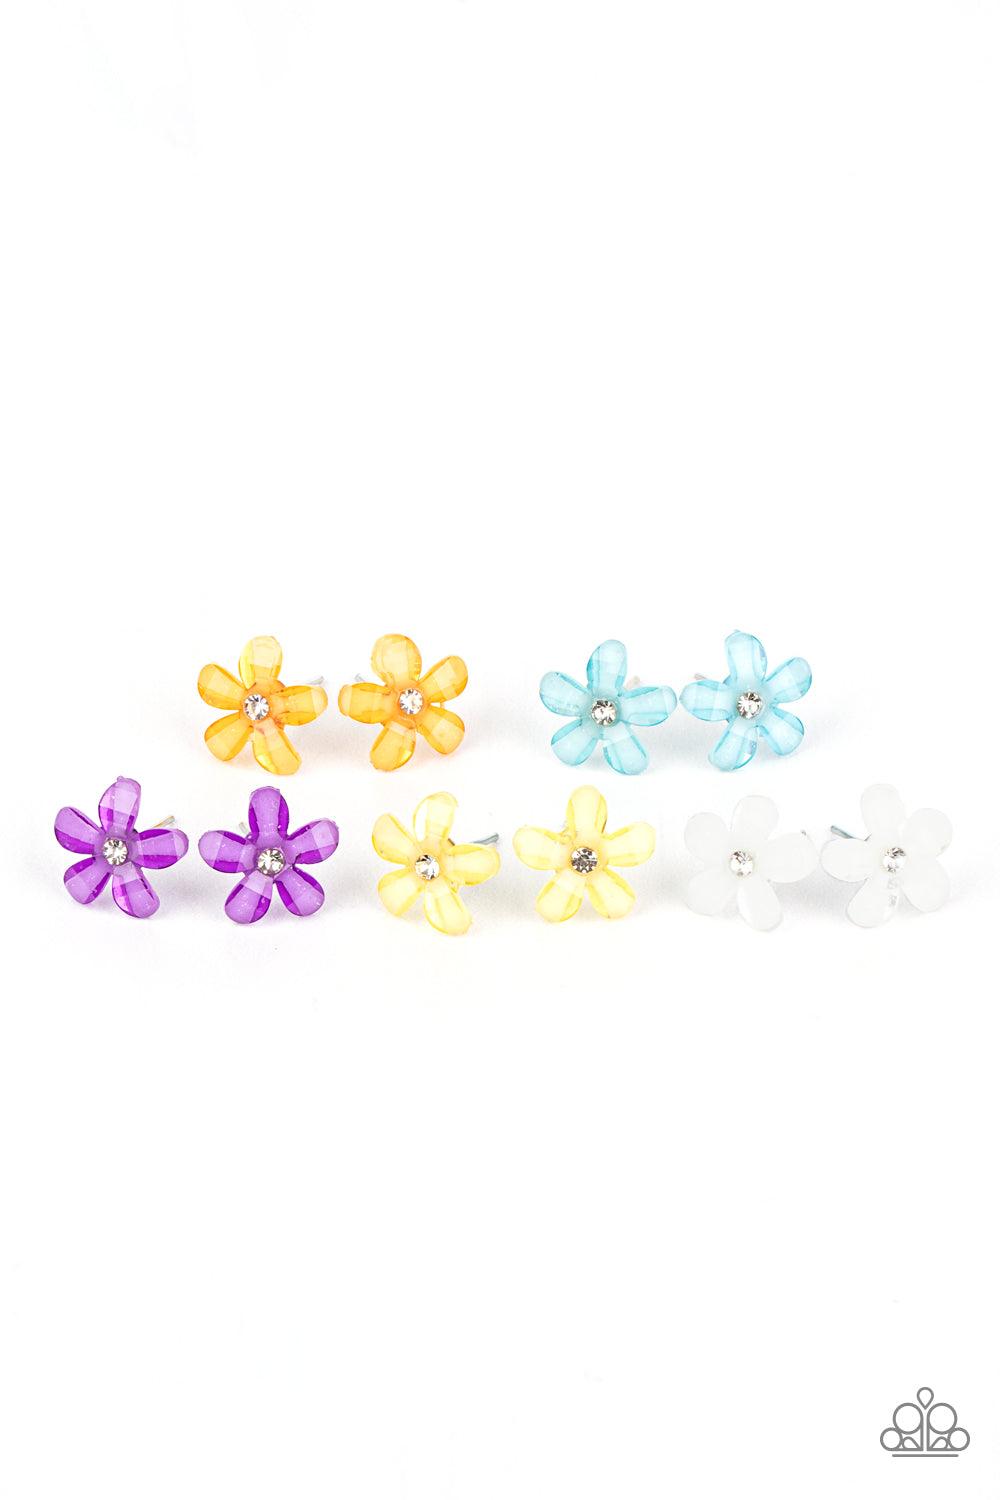 Starlet Shimmer Earrings - Flower - Jewelry by Bretta